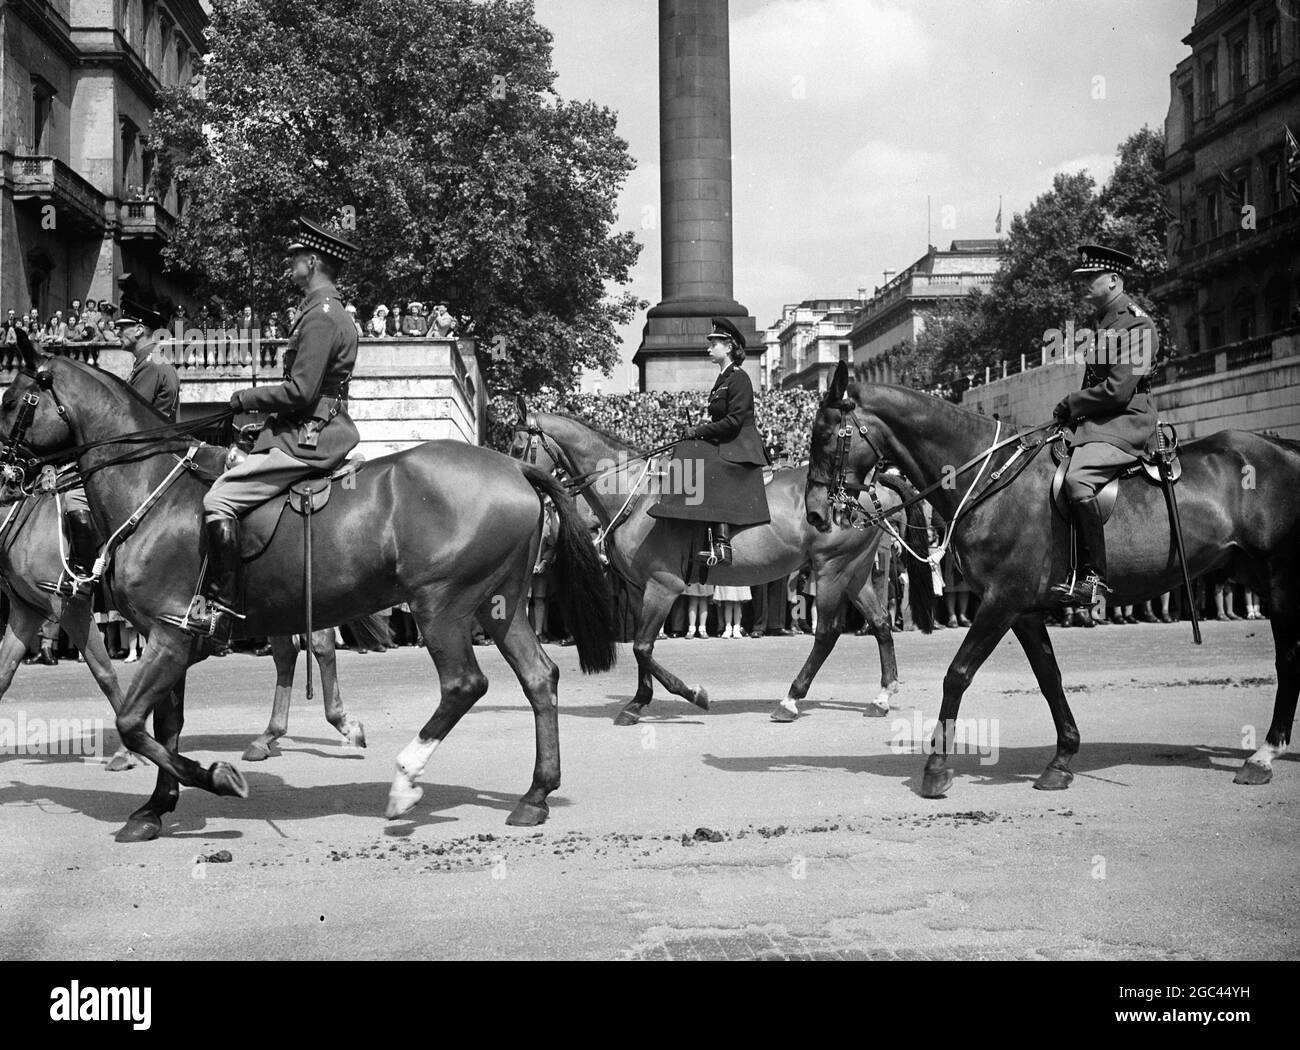 König führt königliche Prozession nach Trooping Fotoausstellungen: Der König, Prinzessin Elizabeth und der Herzog von Gloucester führten die Prozession zwischen großen Menschenmengen an, als sie sich der Horse Guards Parade zur Trooping the Color Zeremonie näherten, nachdem sie vom Buckingham Palace aus am 12. Juni 1947 gefahren waren Stockfoto